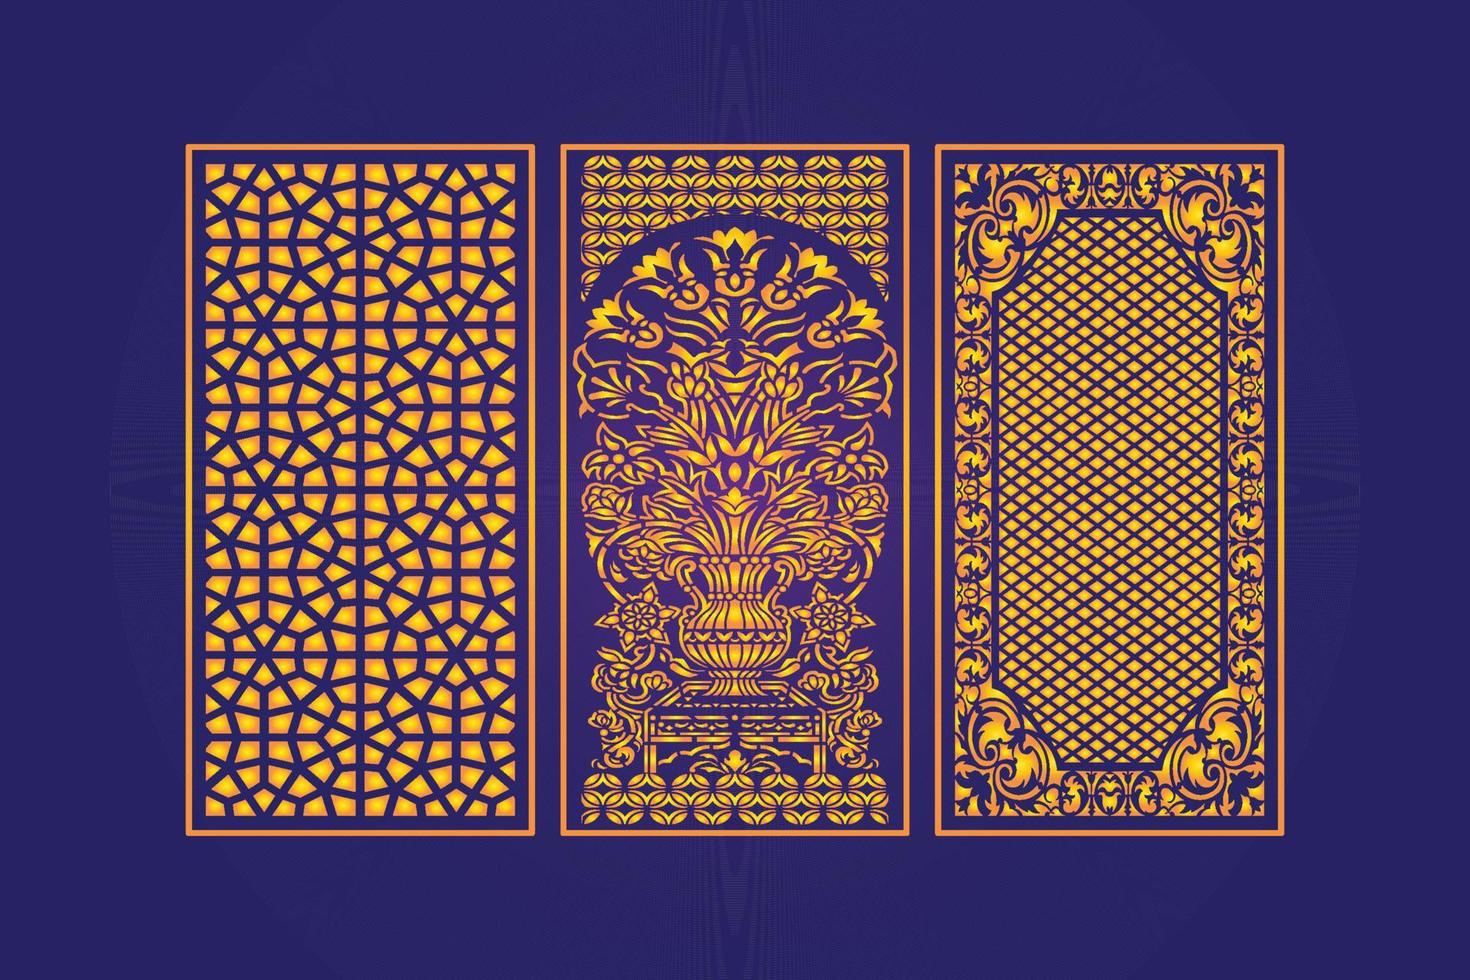 plantilla de paneles de corte láser decorativos islámicos con textura geométrica abstracta y láser floral vector